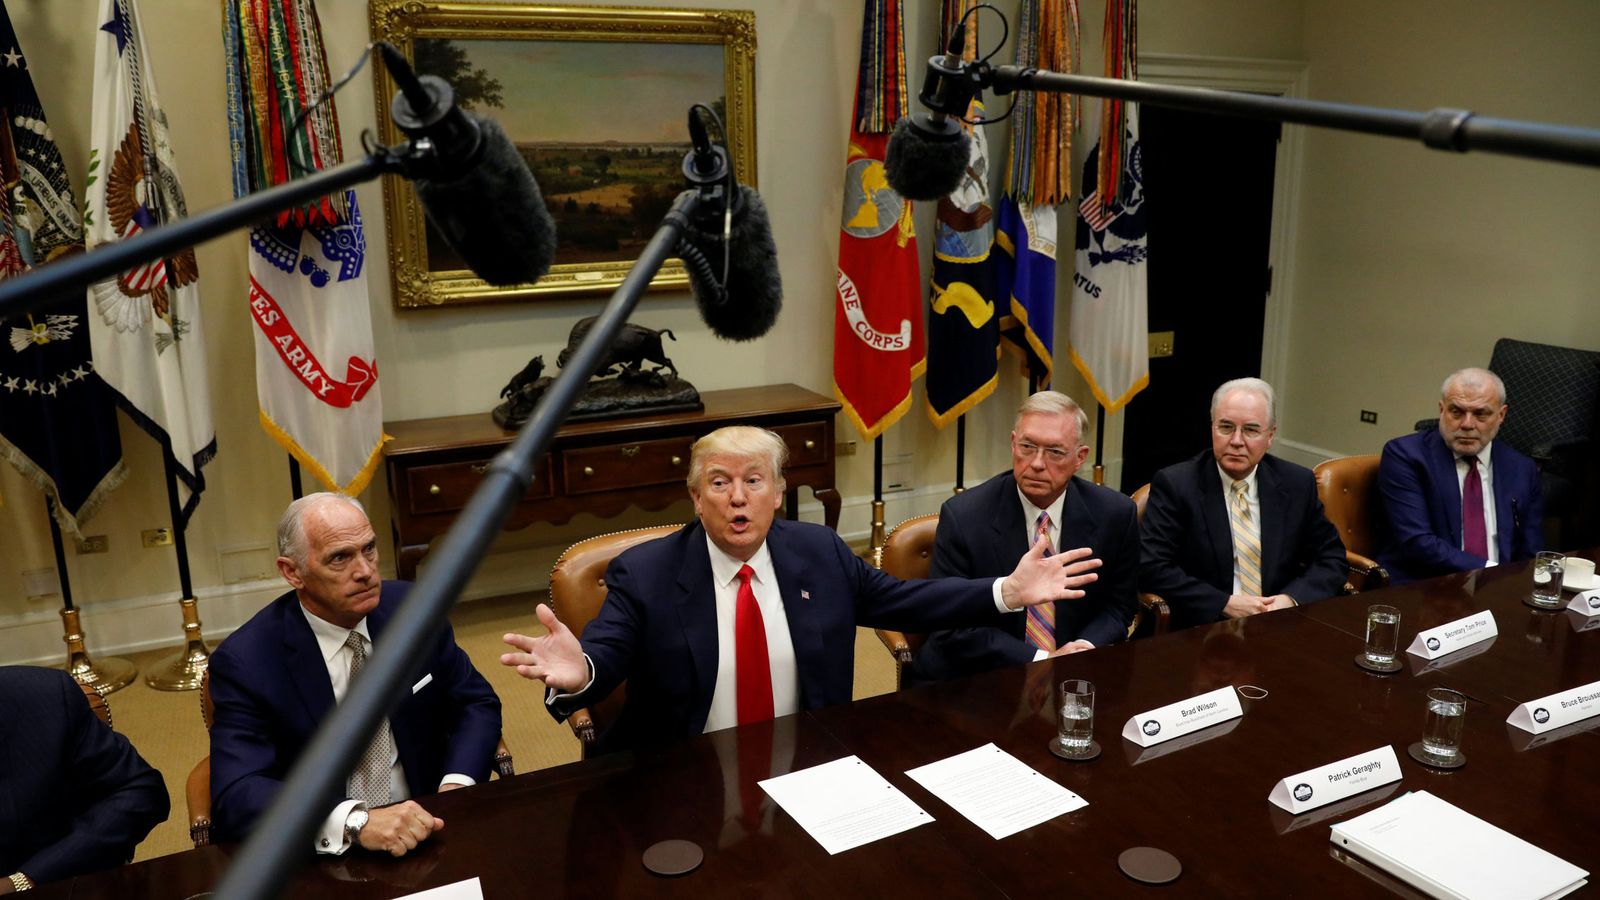 Foto: Donald Trump durante su encuentro con líderes de empresas aseguradoras en la Casa Blanca, el 27 de febrero de 2017 (Reuters)